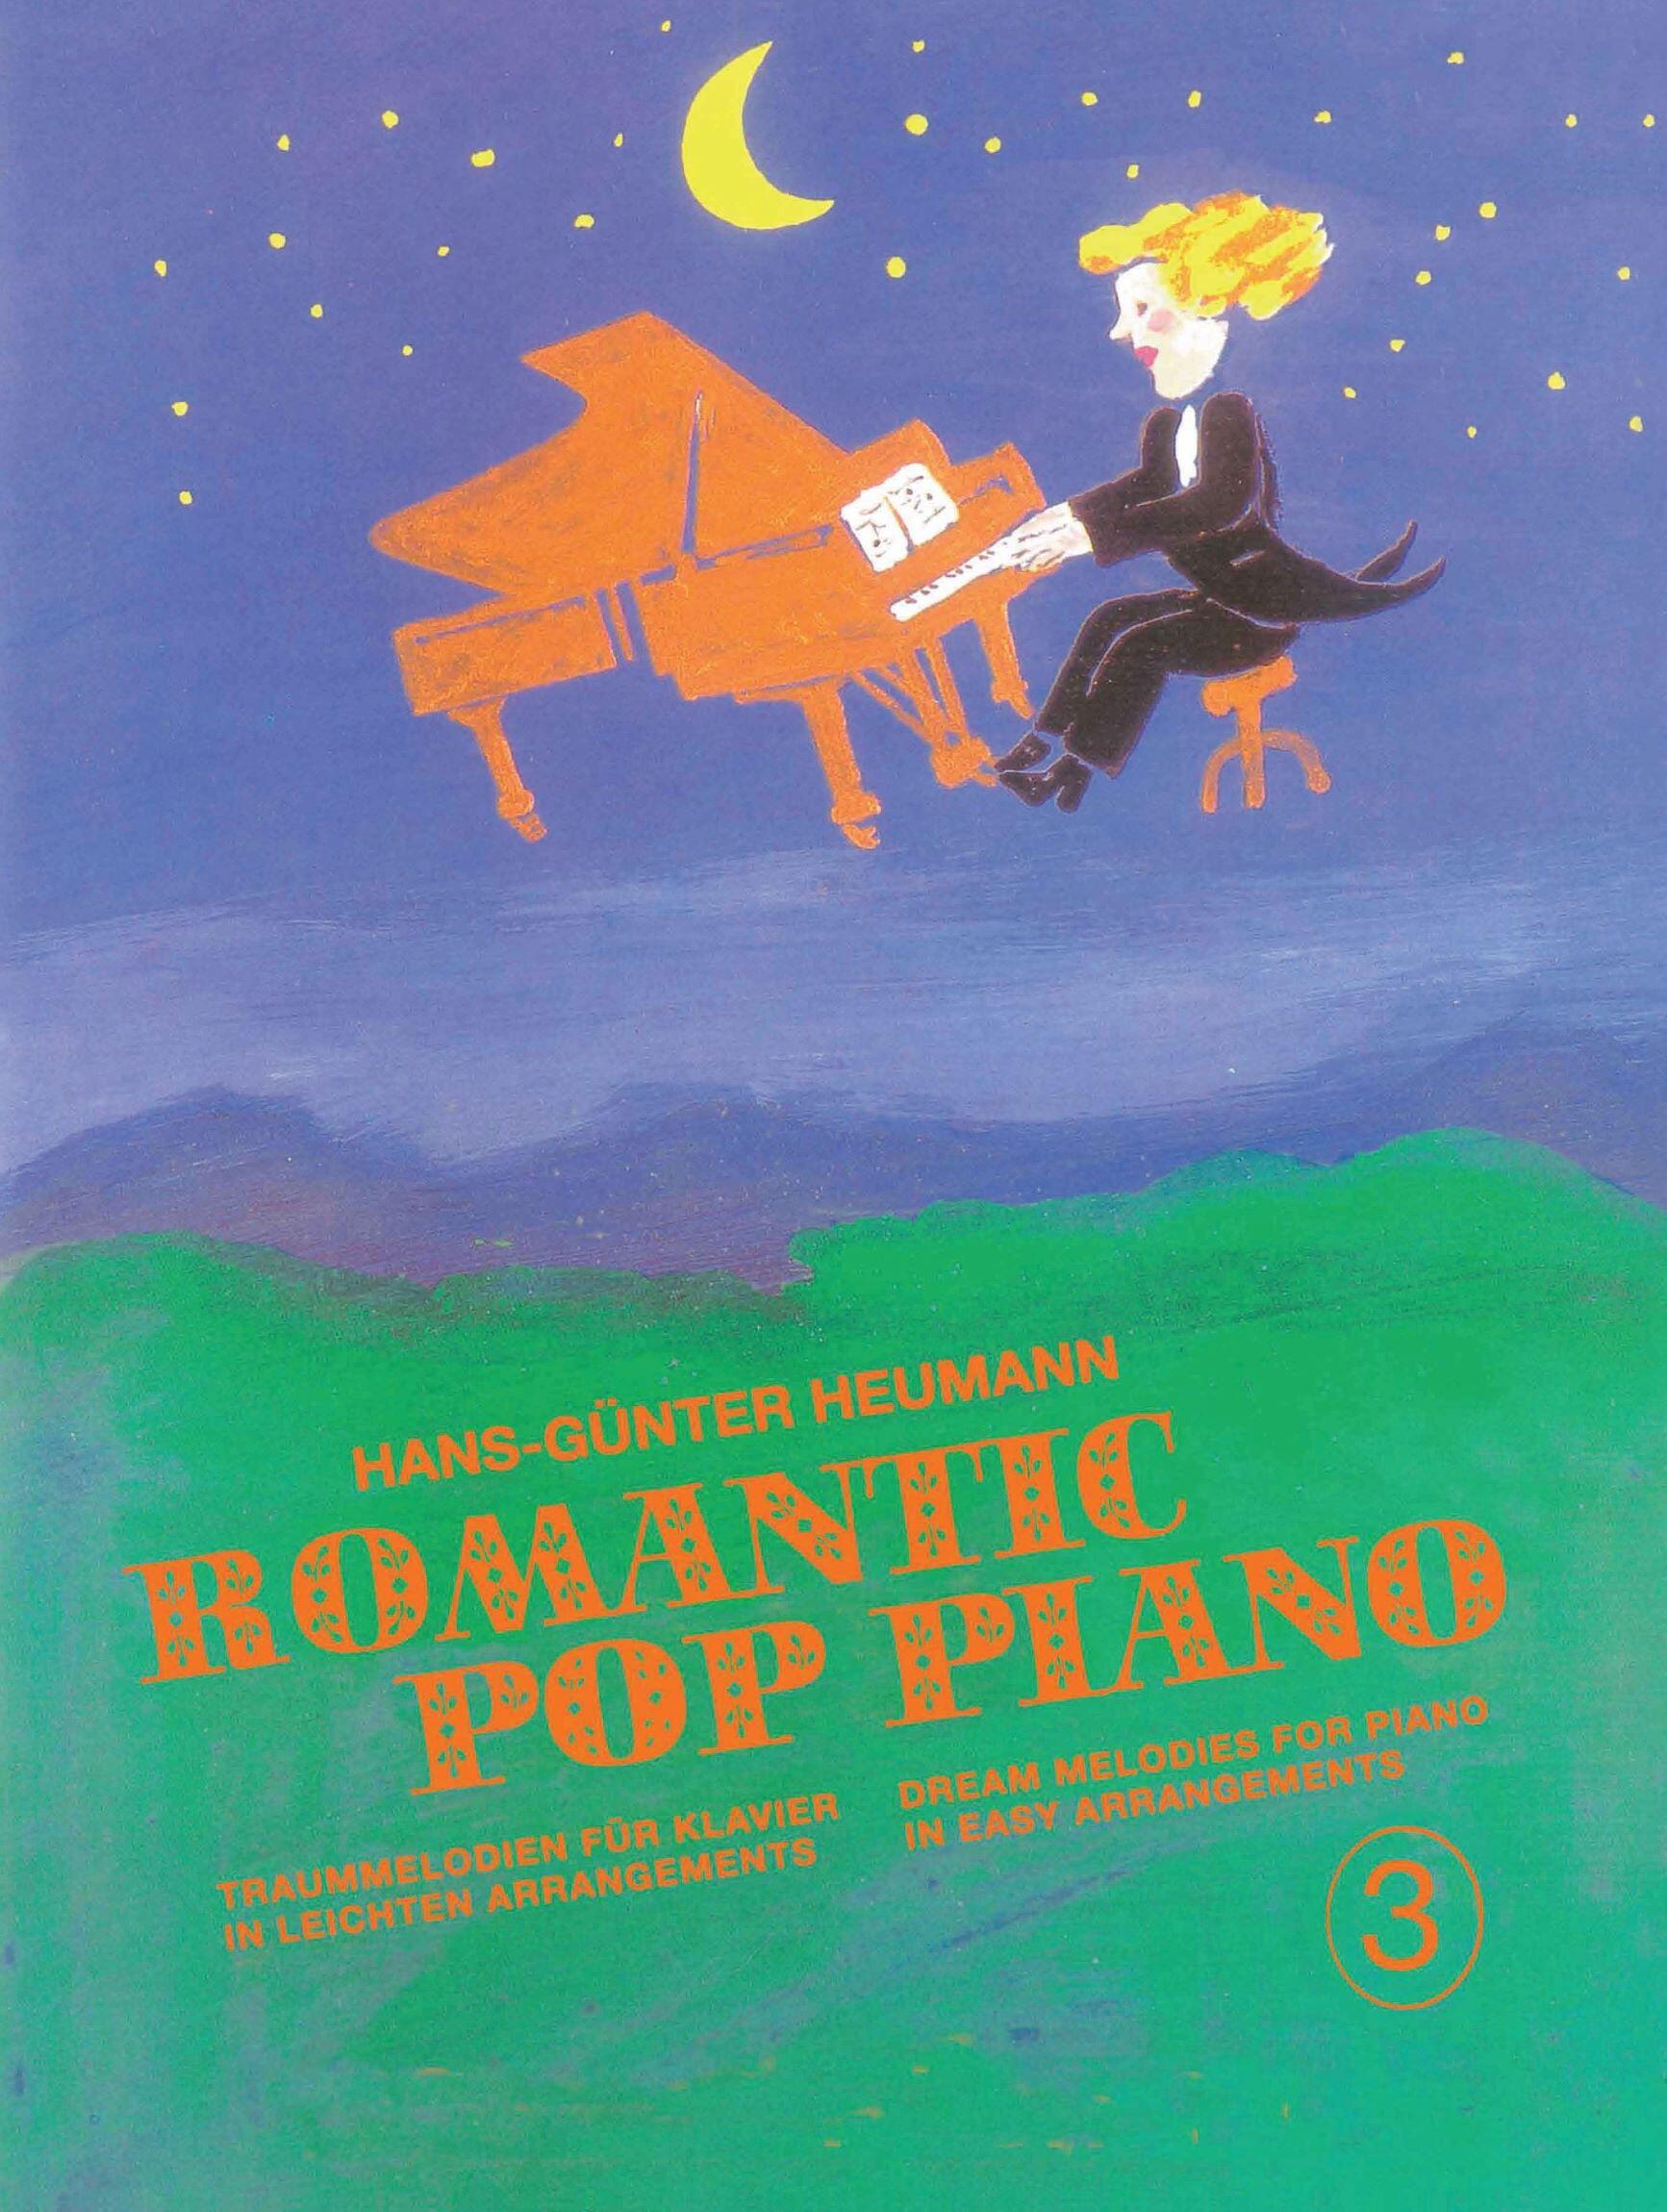 Romantic Pop Piano 3 Traummelodien für Klavier in leichten Arrangements - Dream Melodies for Piano in Easy Arrangements : photo 1